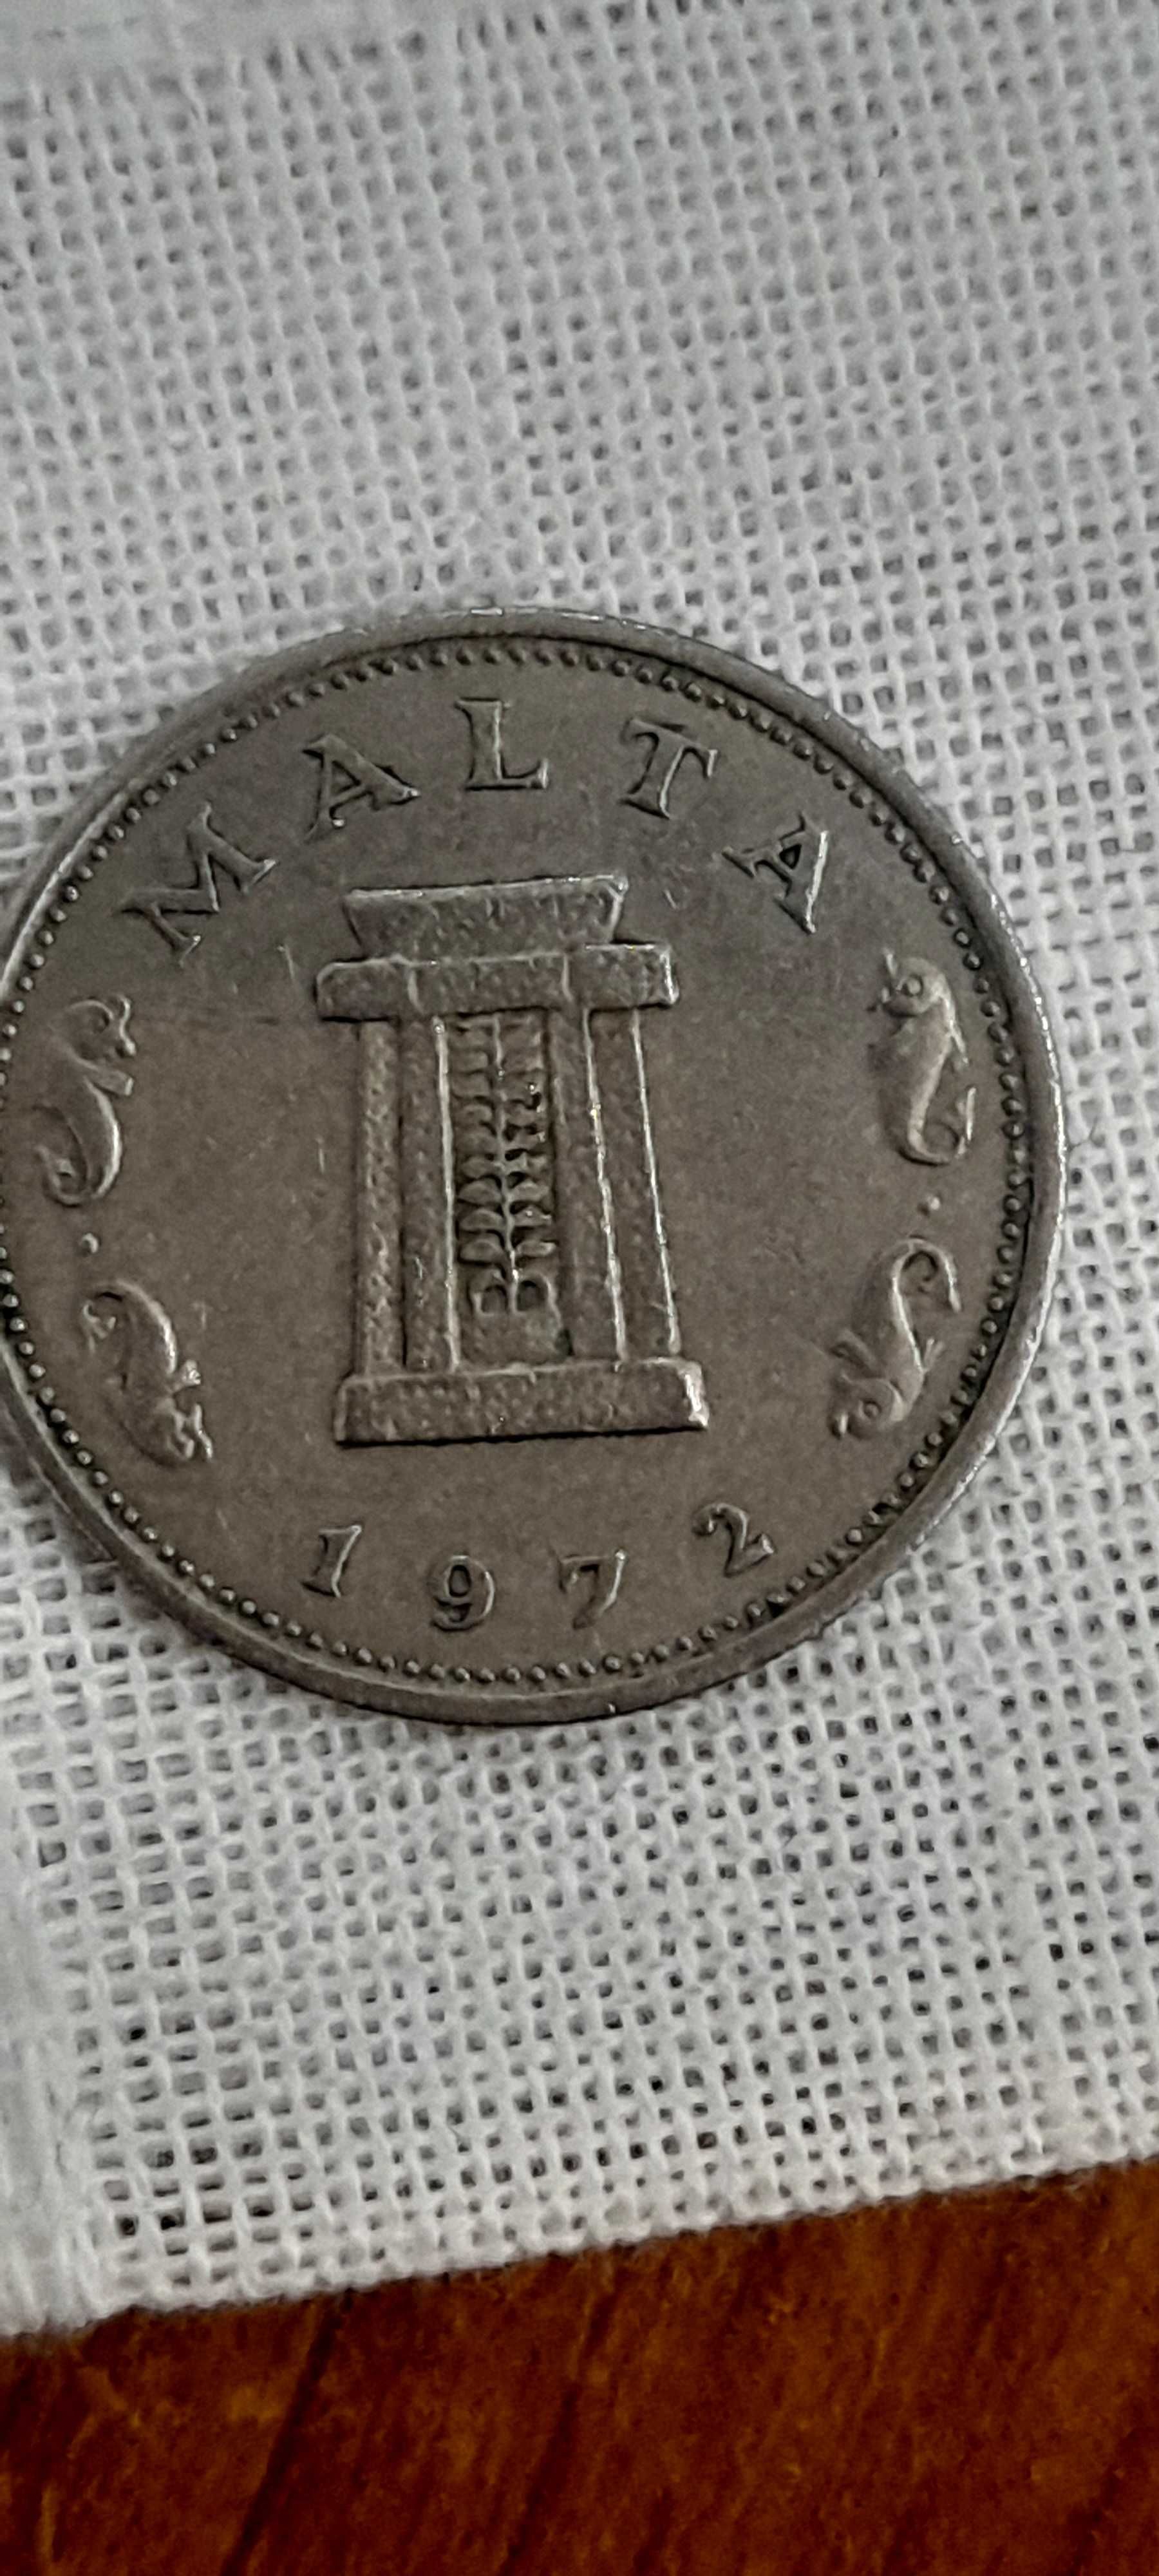 Monede foarte vechi